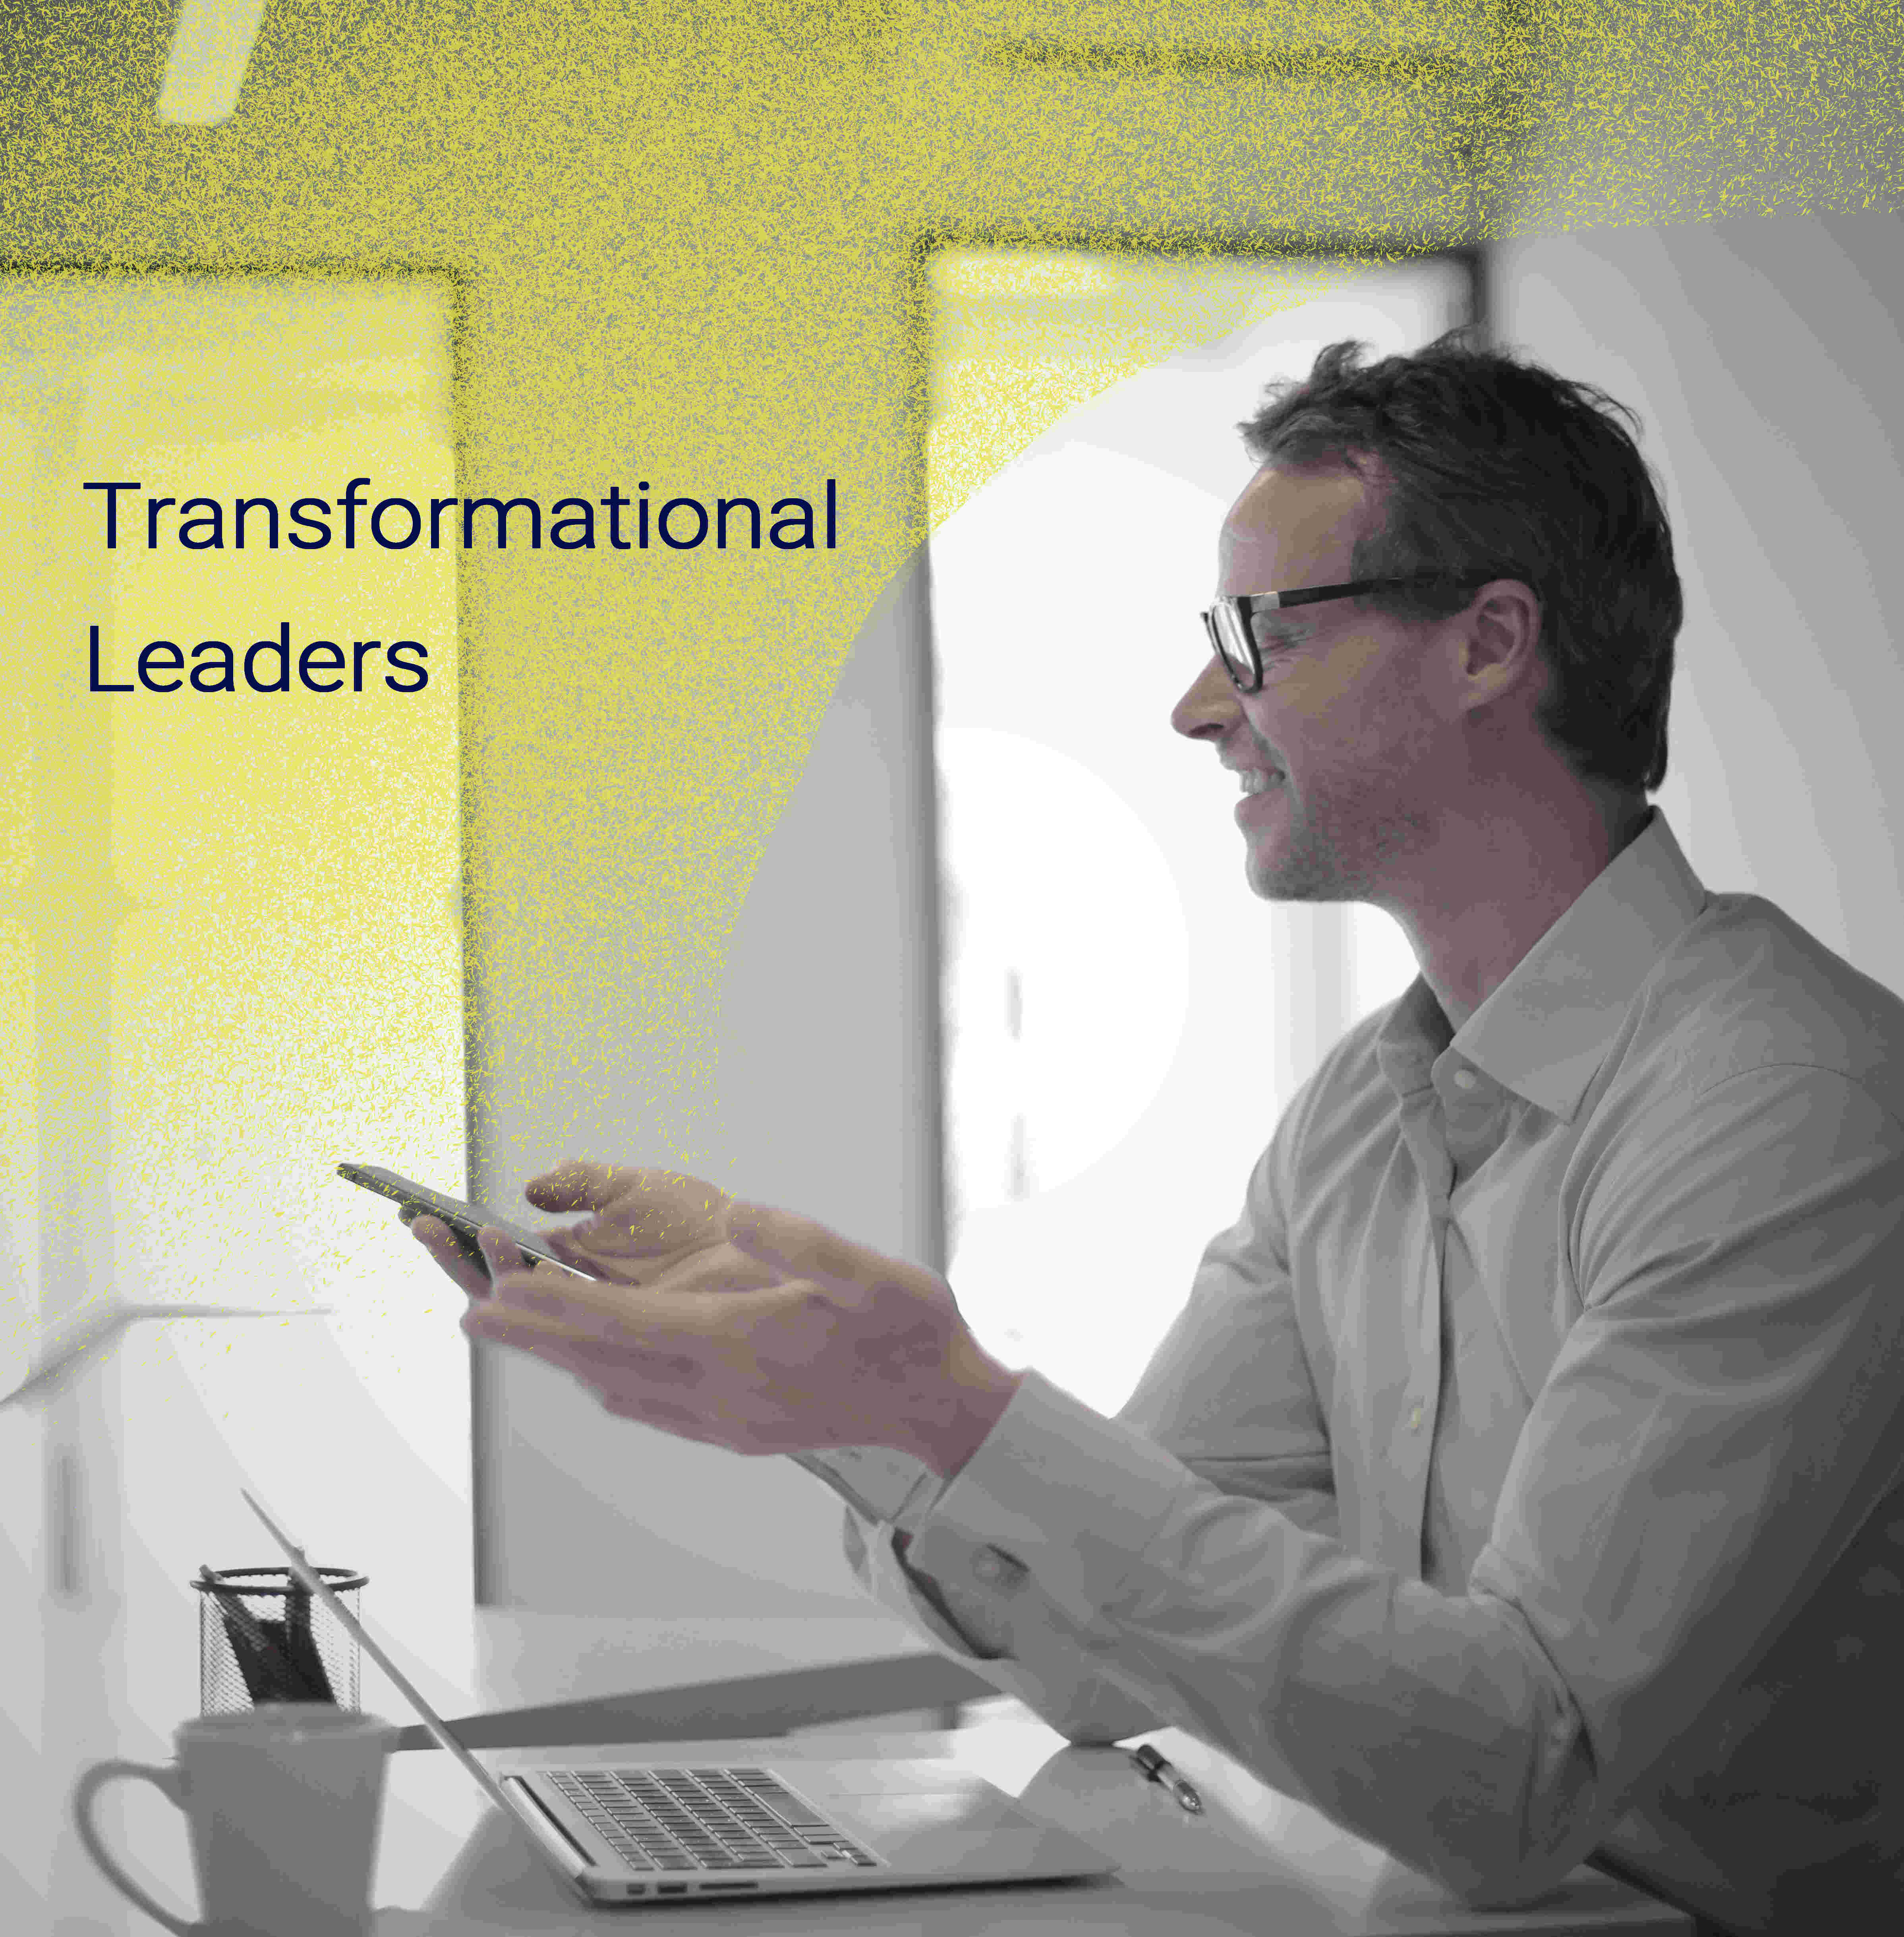 Erleben Sie transformative Leadership-Kraft: Innovation, Kommunikation, Nachhaltigkeit. Stärken Sie Resilienz und Selbstreflexion. Testen Sie Ihr Wissen mit spannenden Quizfragen und entwickeln Sie Ihre Führungsqualitäten.